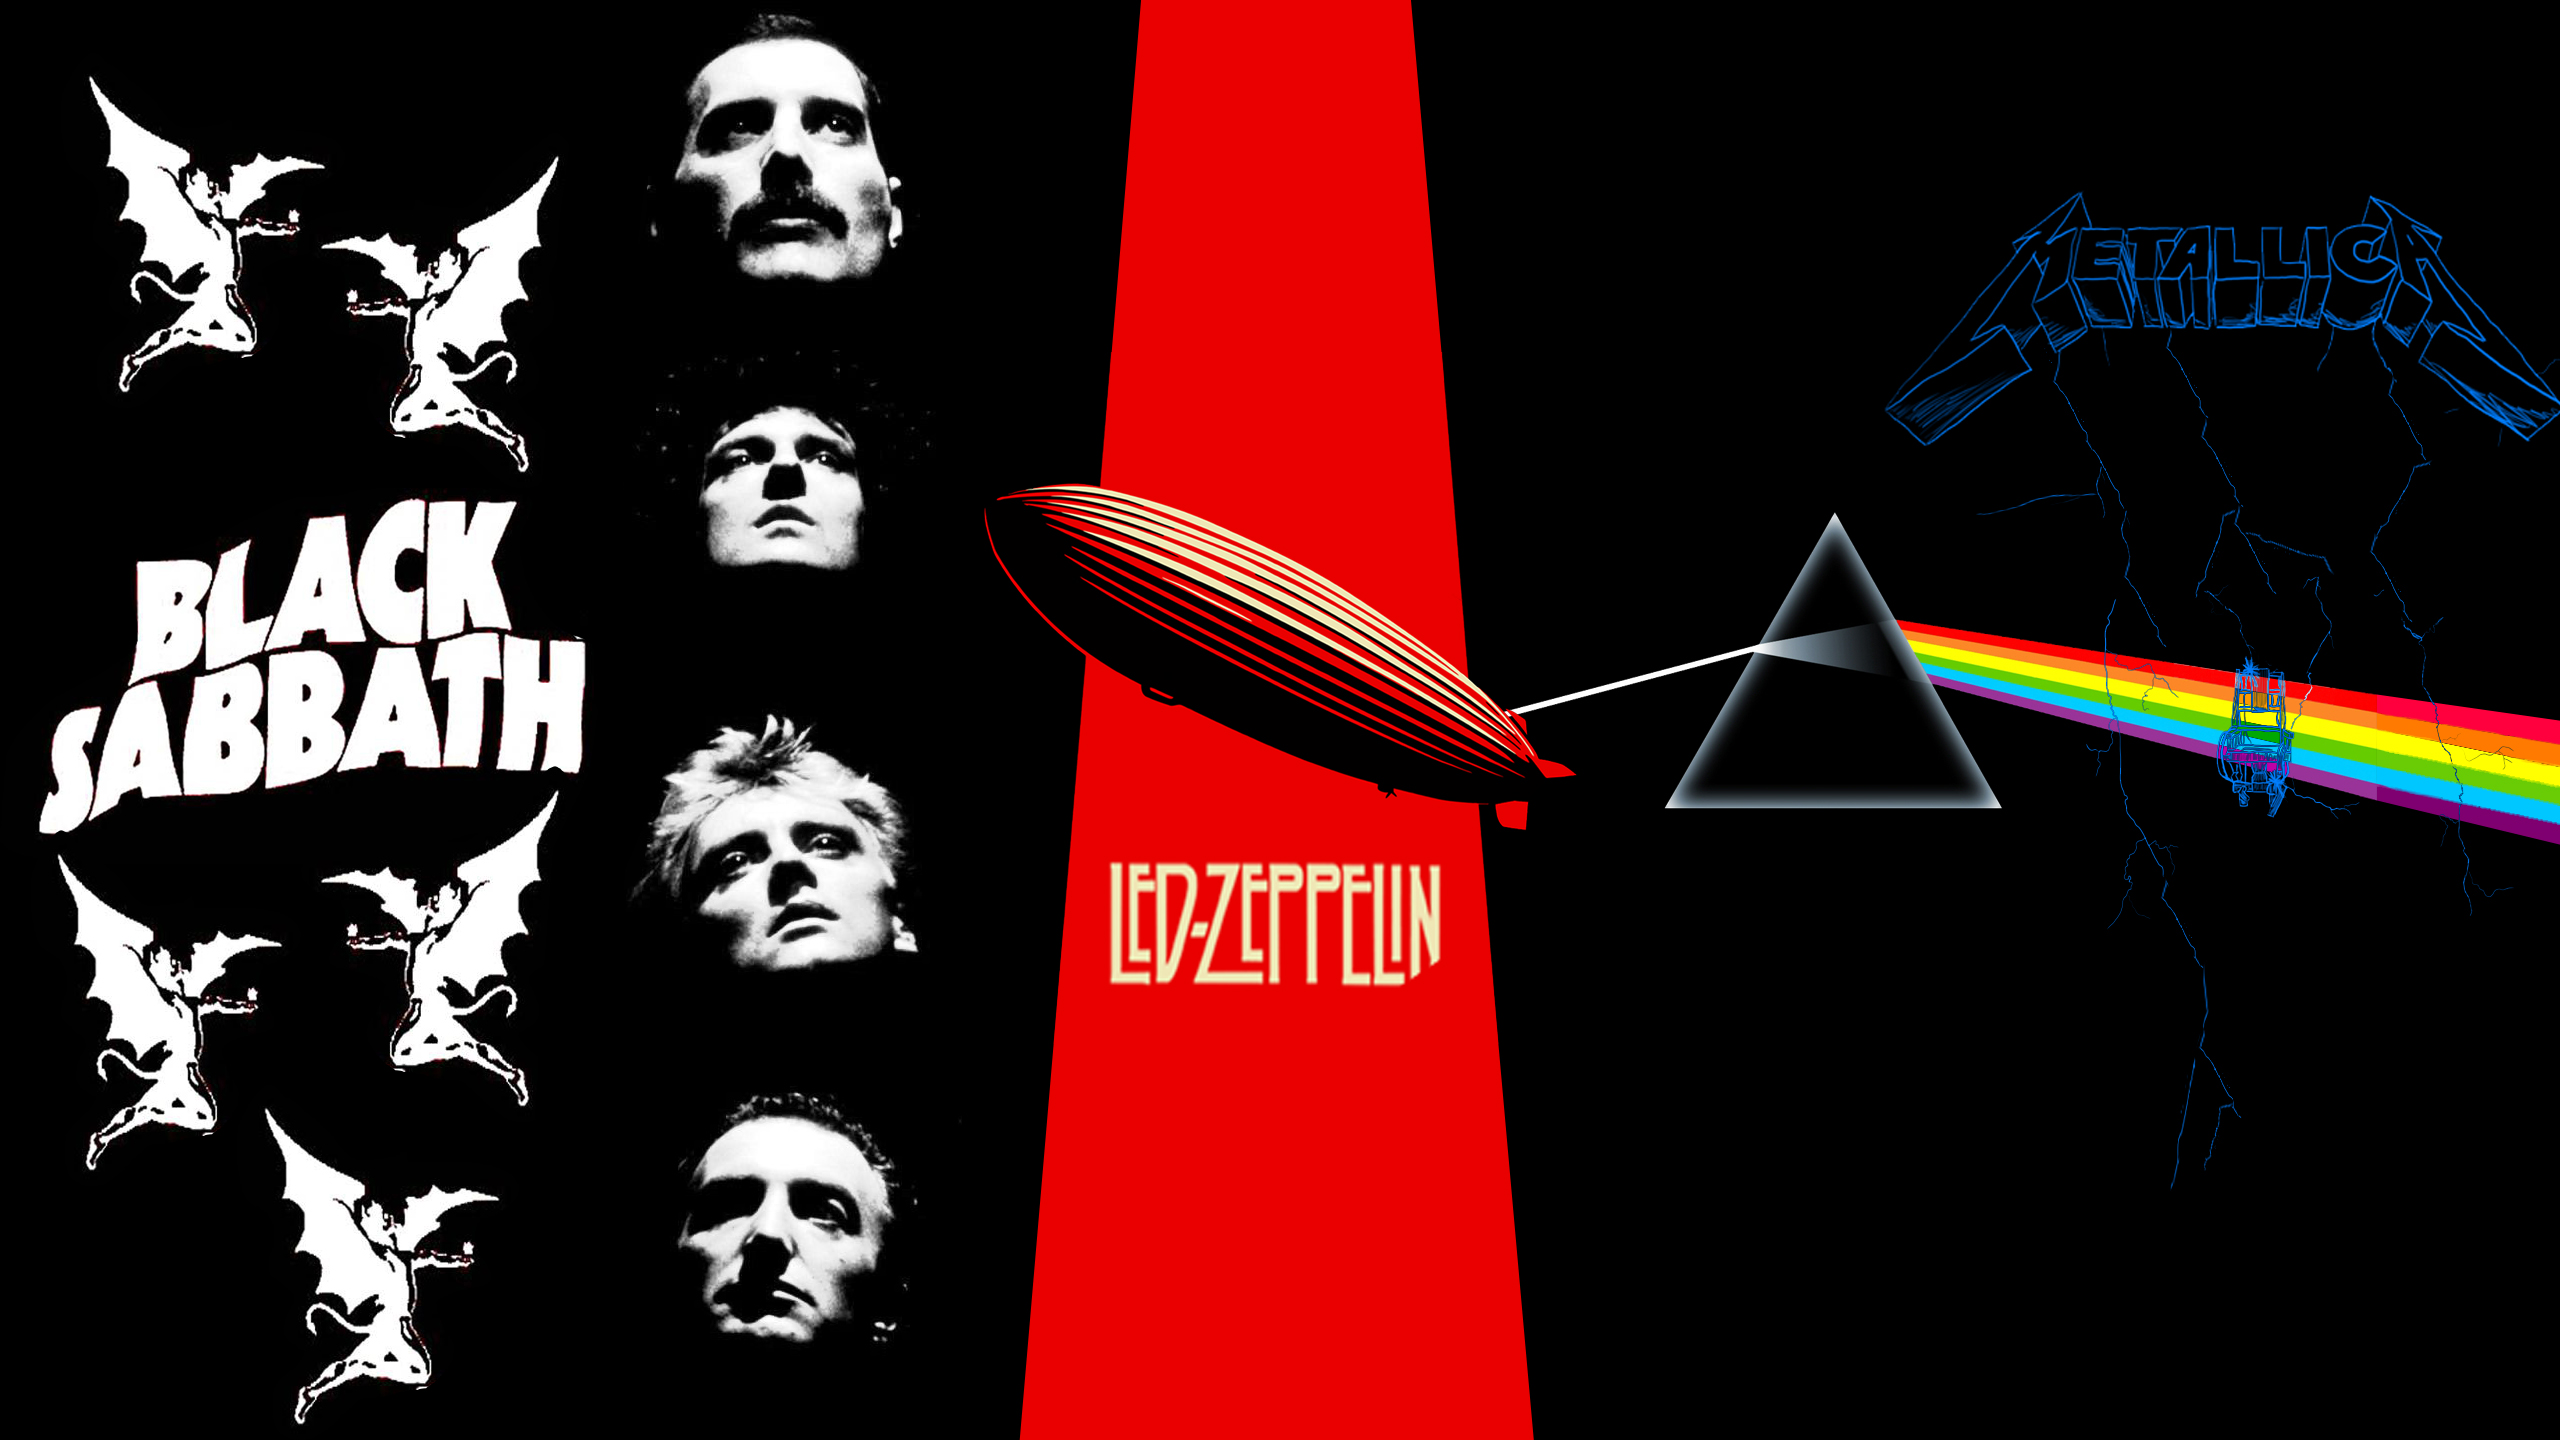 Led Zeppelin обои